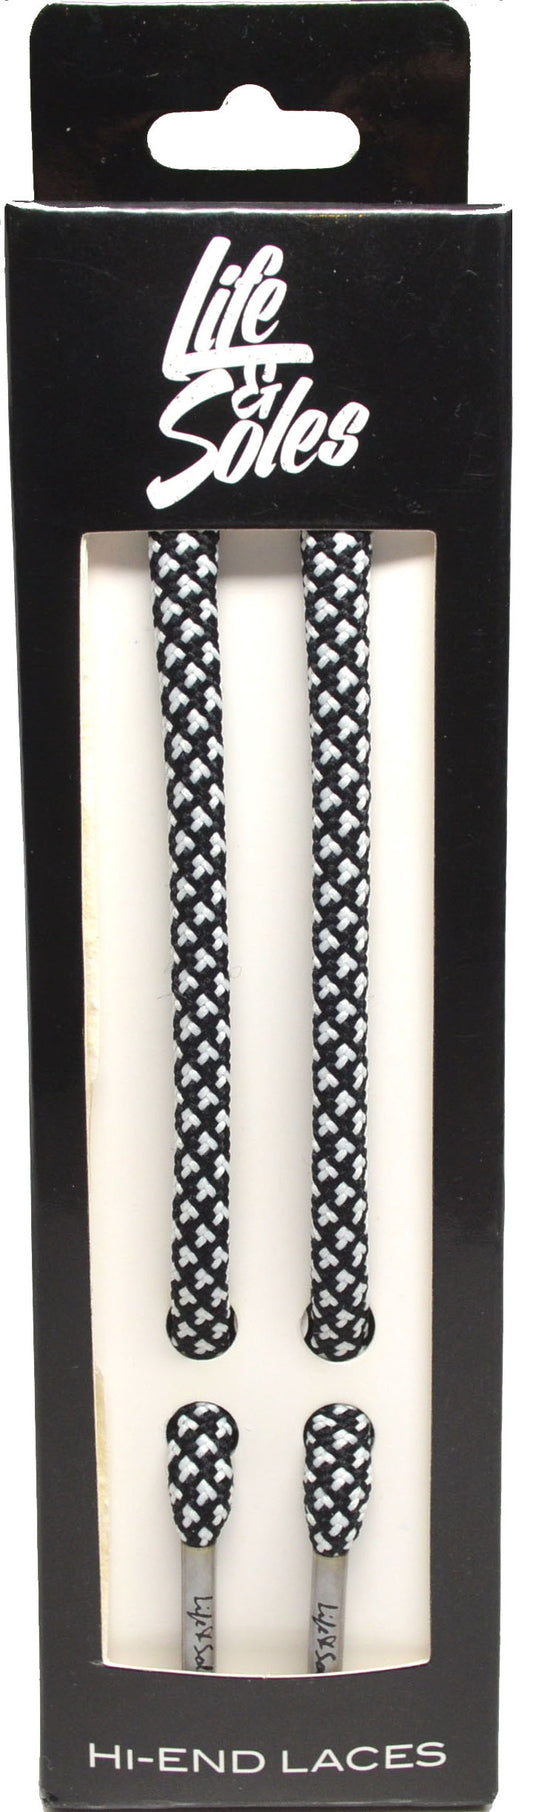 Black & White Rope Shoelaces